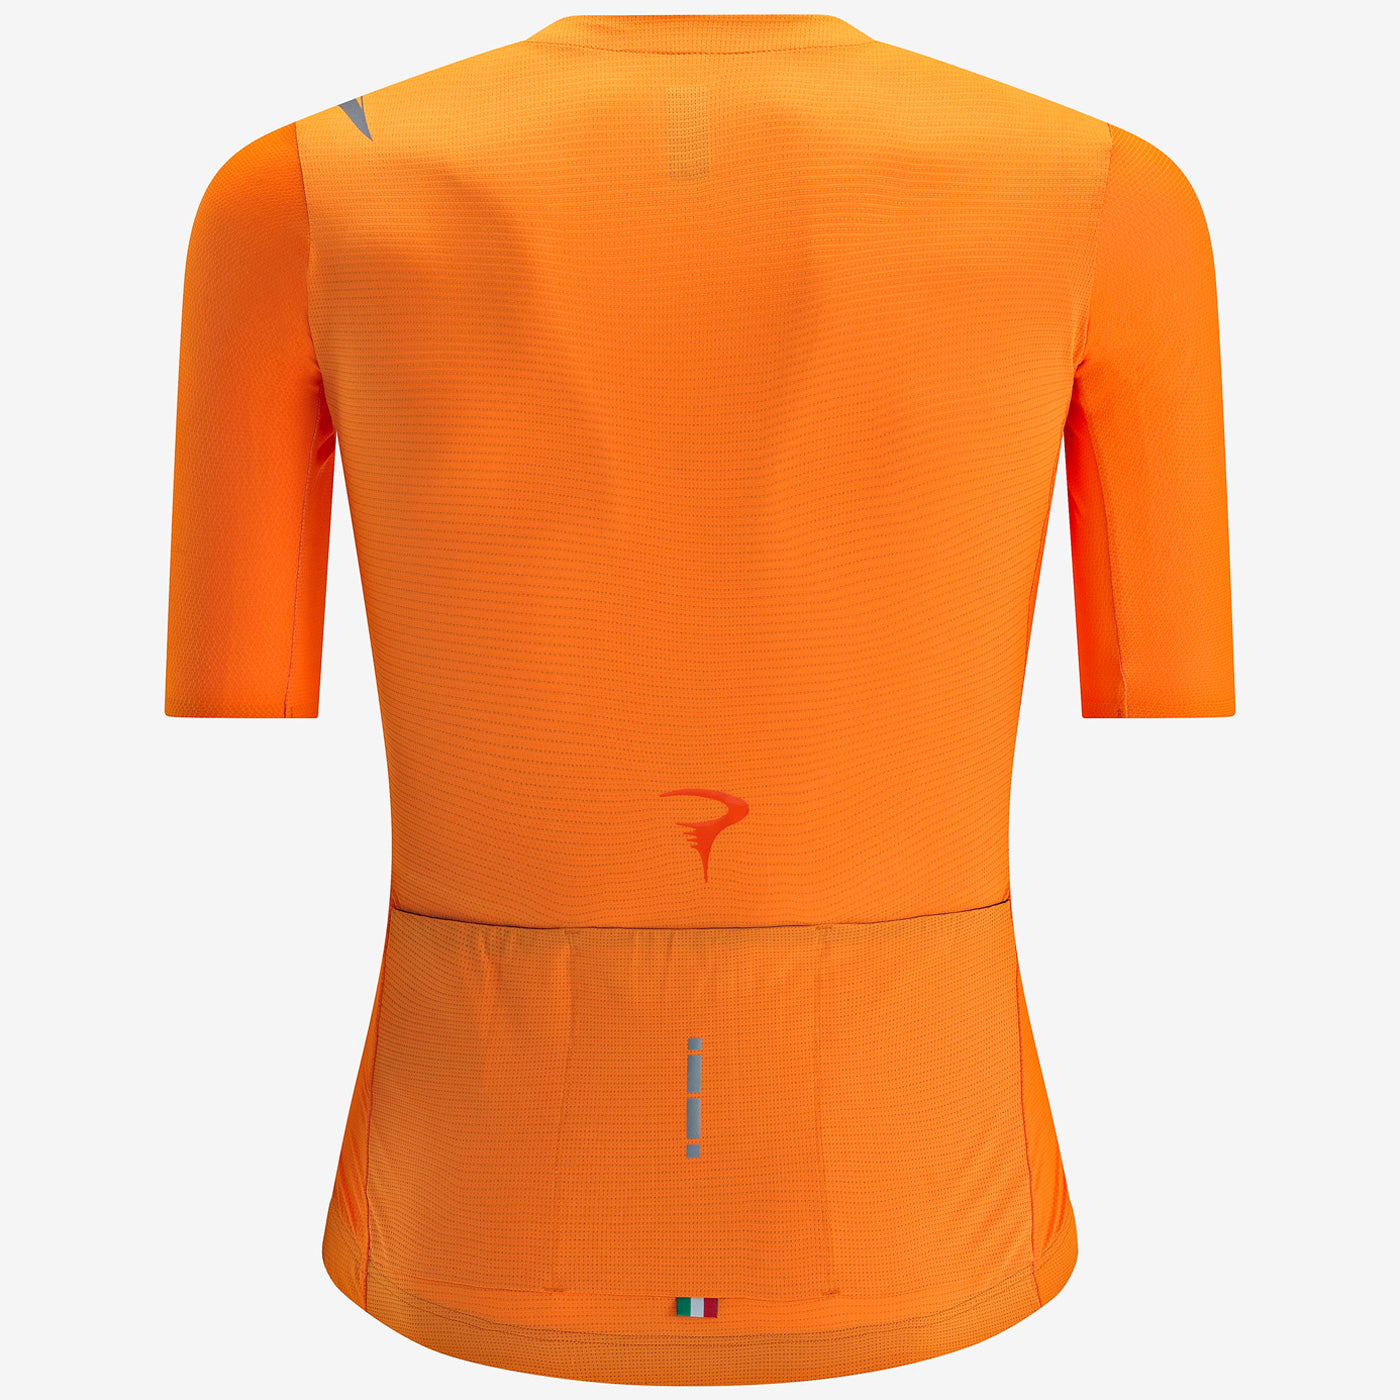 Pinarello F9 jersey - Orange | All4cycling